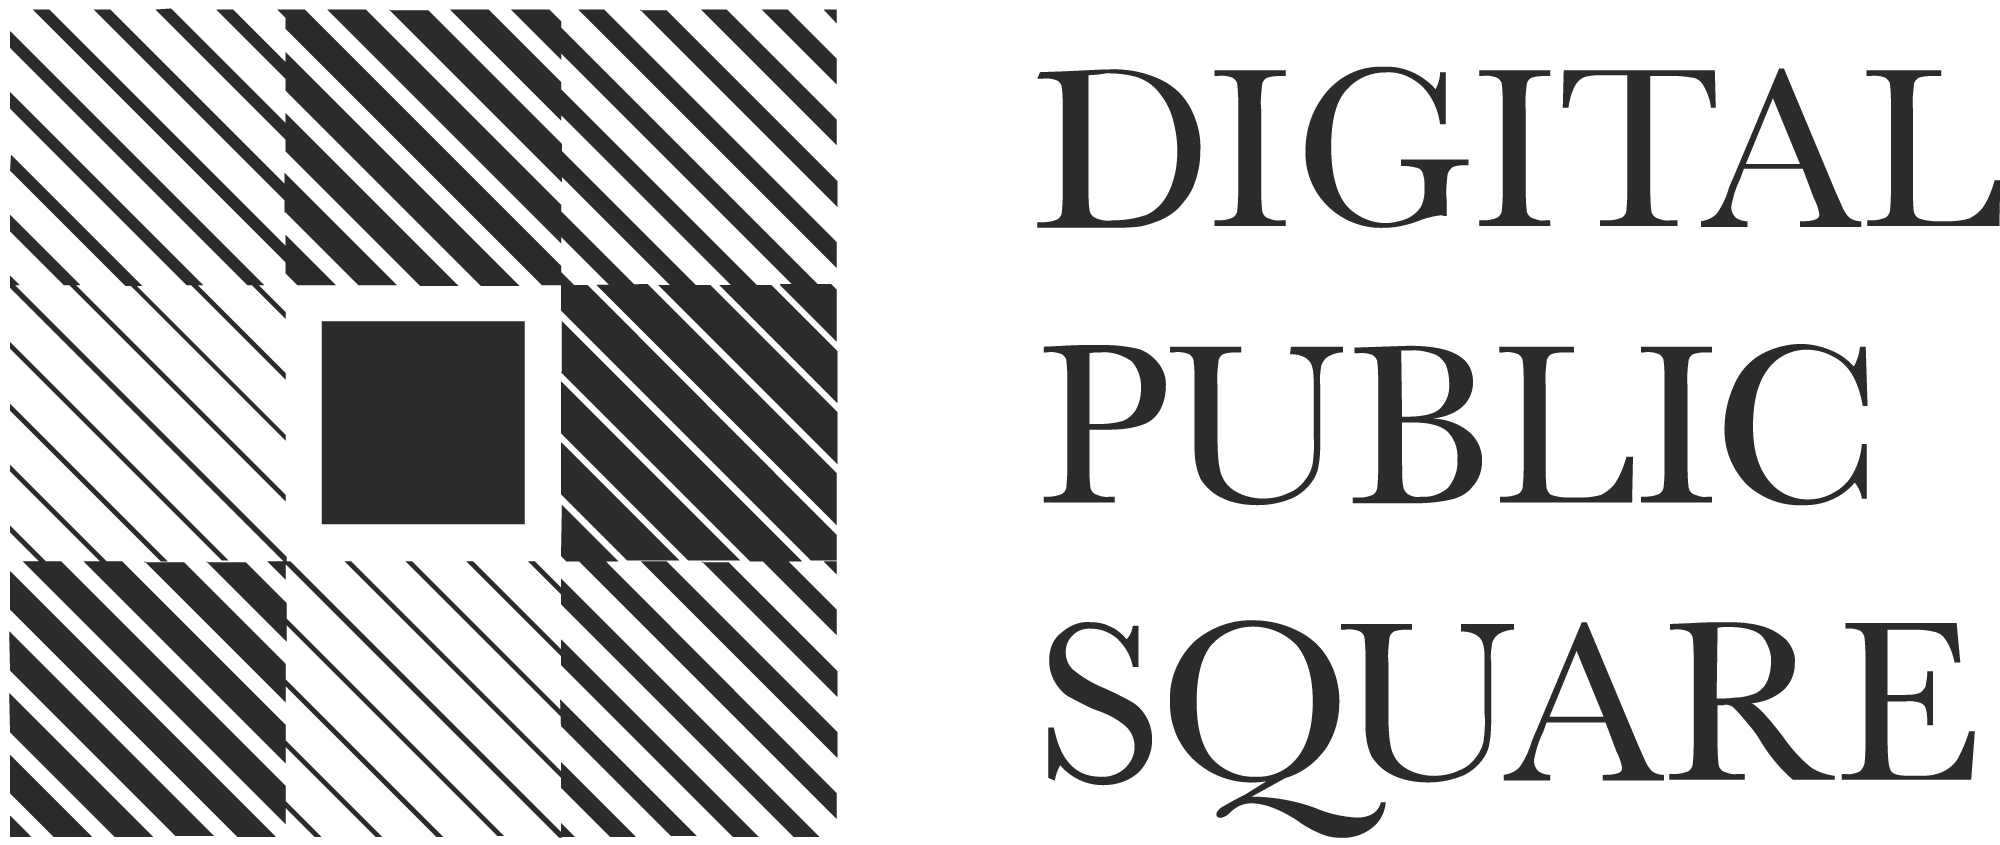 Digital Public Square